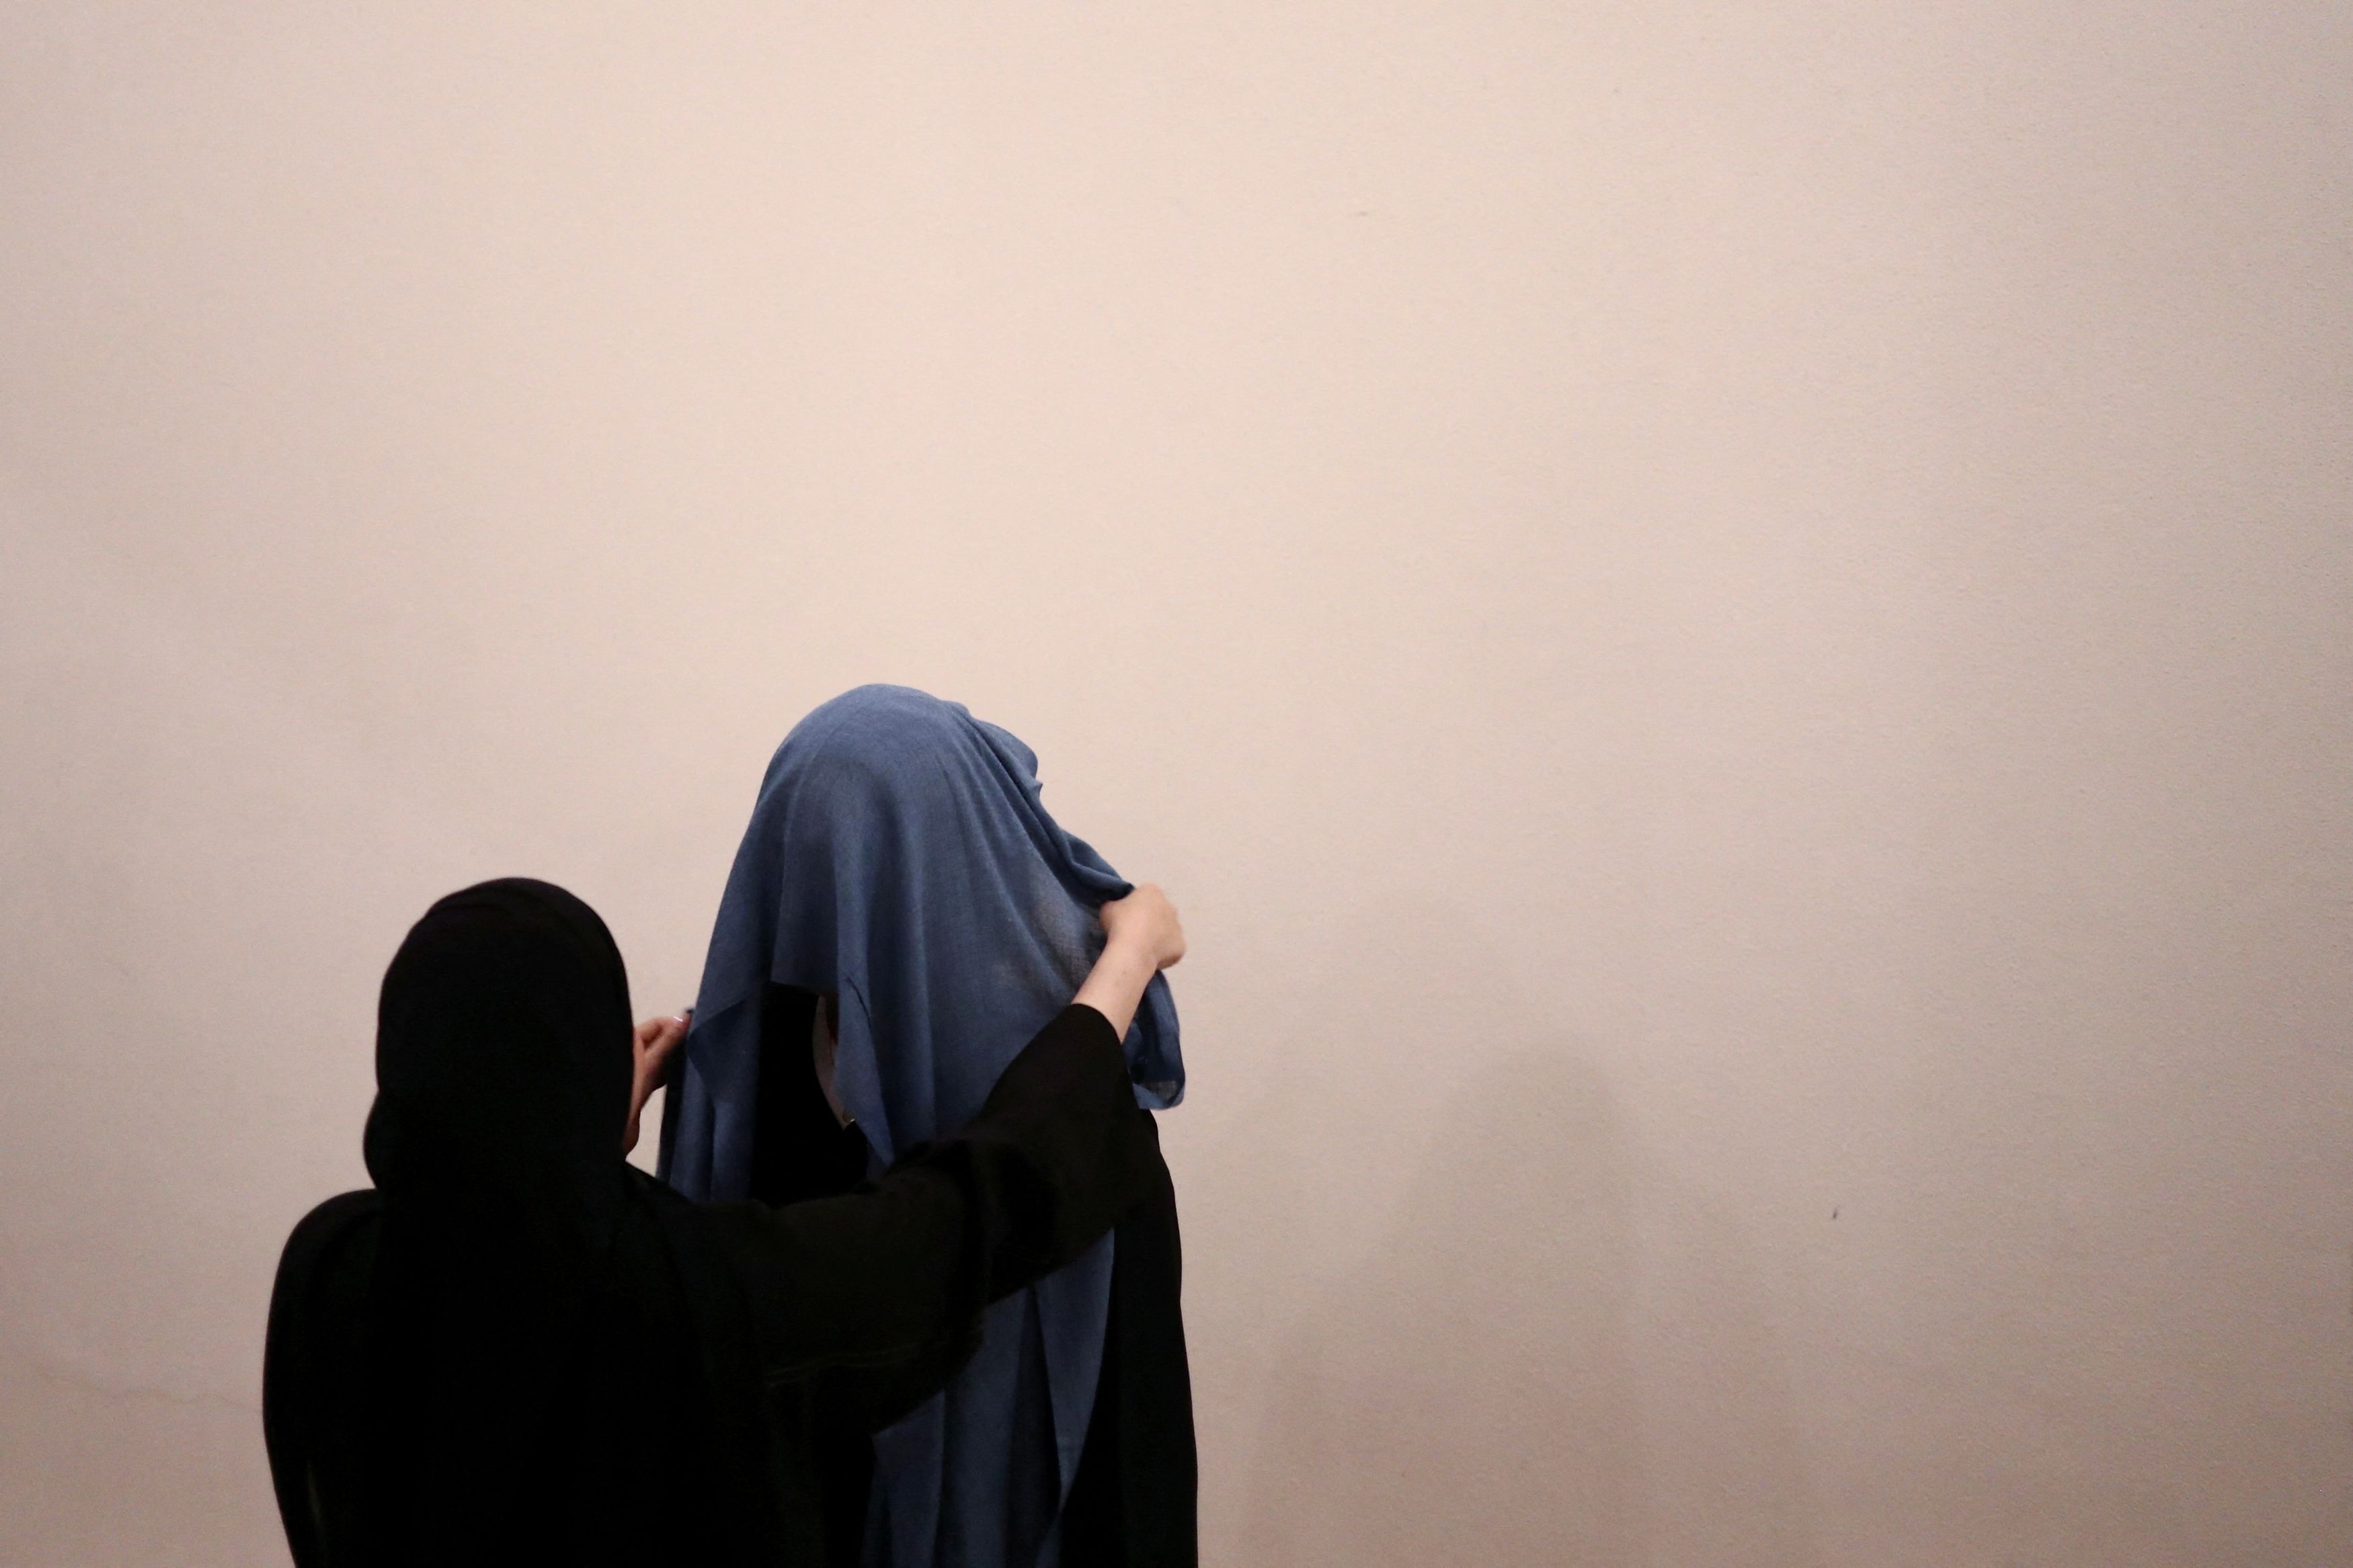 Ρατσιστική επίθεση στο Βερολίνο: Επιτέθηκαν σε γυναίκα που φορούσε χιτζάμπ